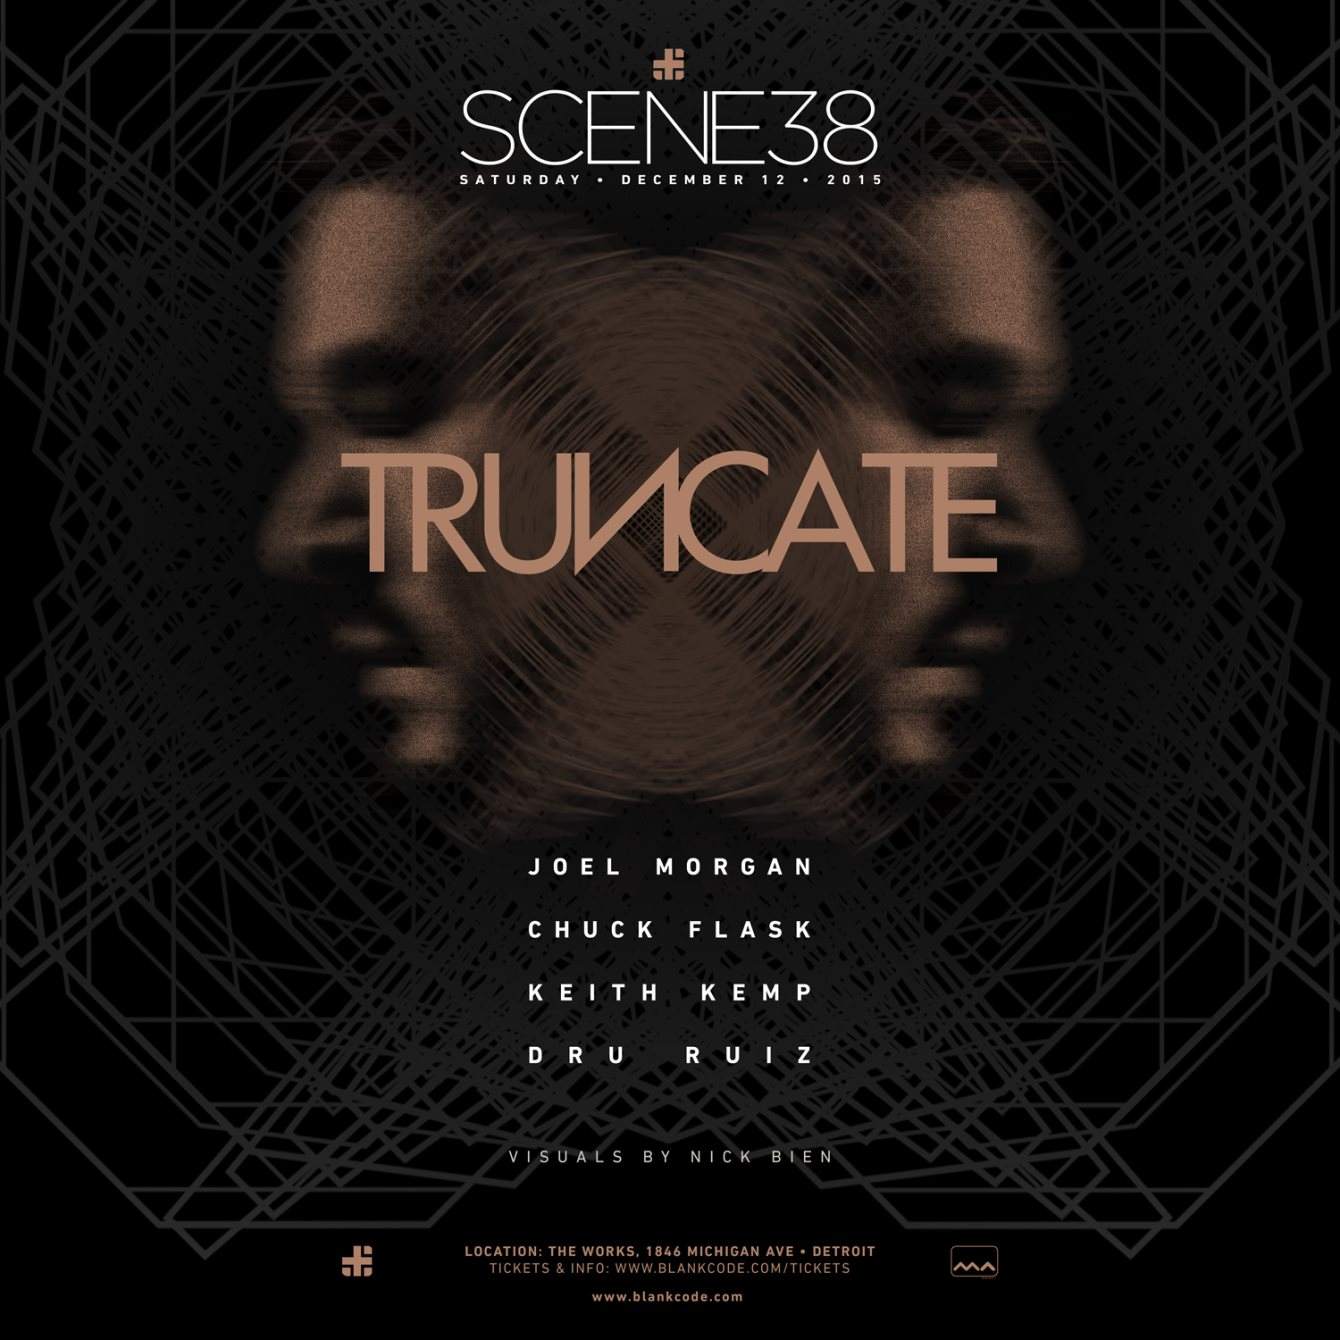 Scene 38 - Truncate - フライヤー裏